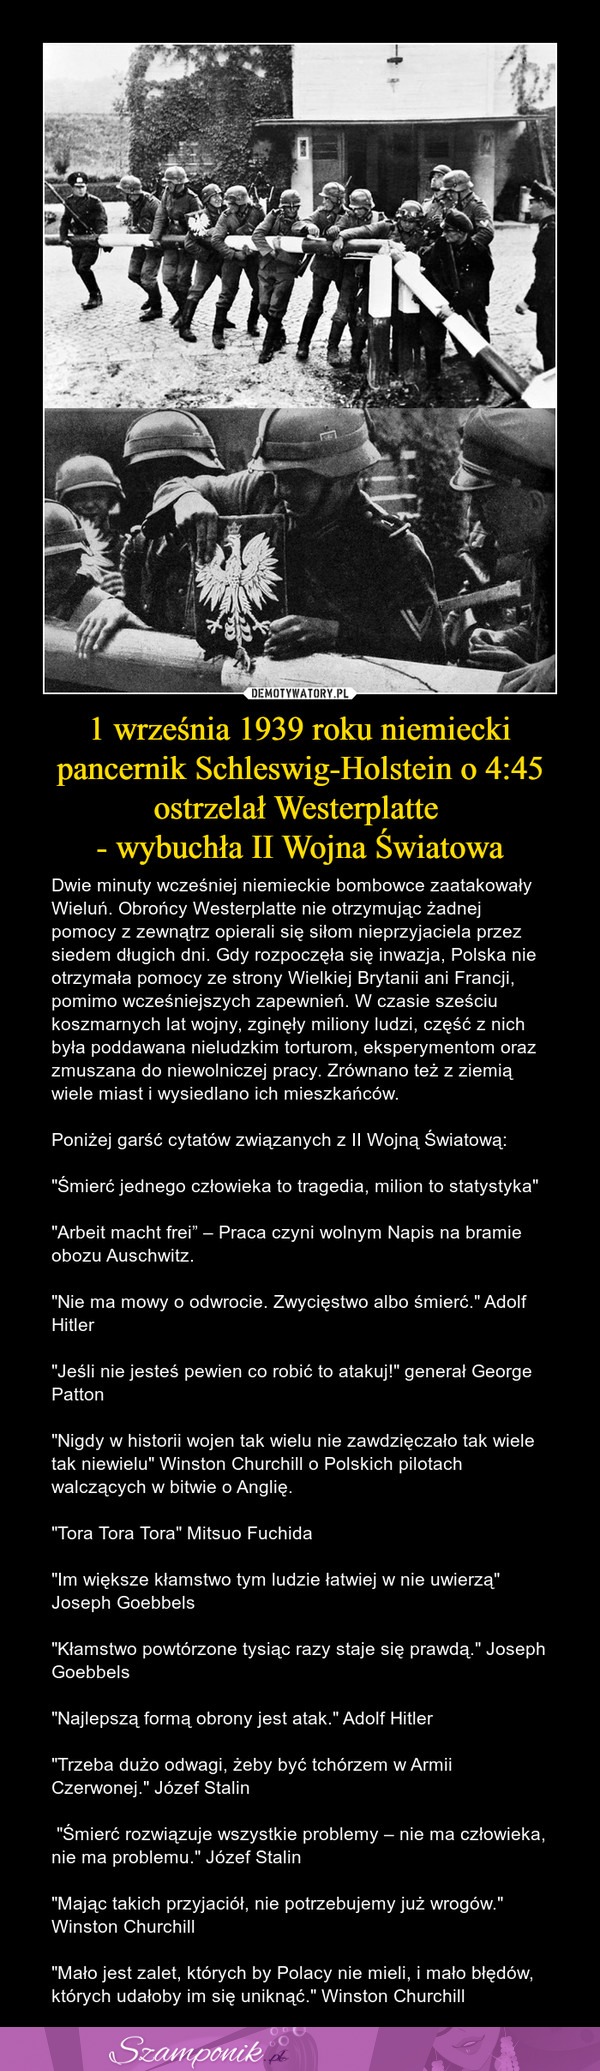 1 września 1939 roku niemiecki pancernik ostrzelał Westerplatte - wybuchła II Wojna Światowa